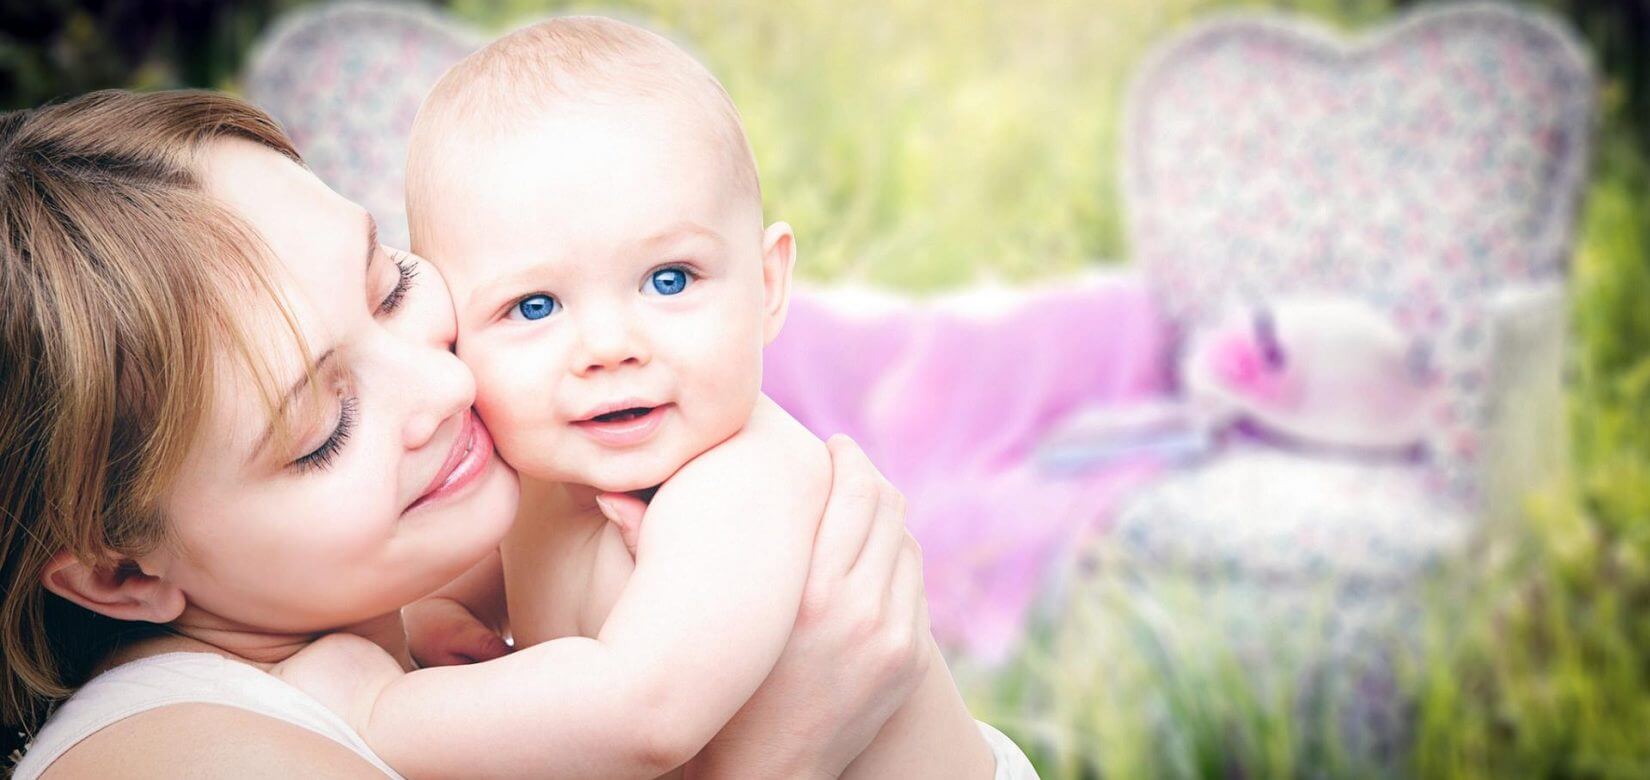 Έρευνα: Η αγάπη της μαμάς αποτελεί  "ασπίδα" για σοβαρές παθήσεις των παιδιών